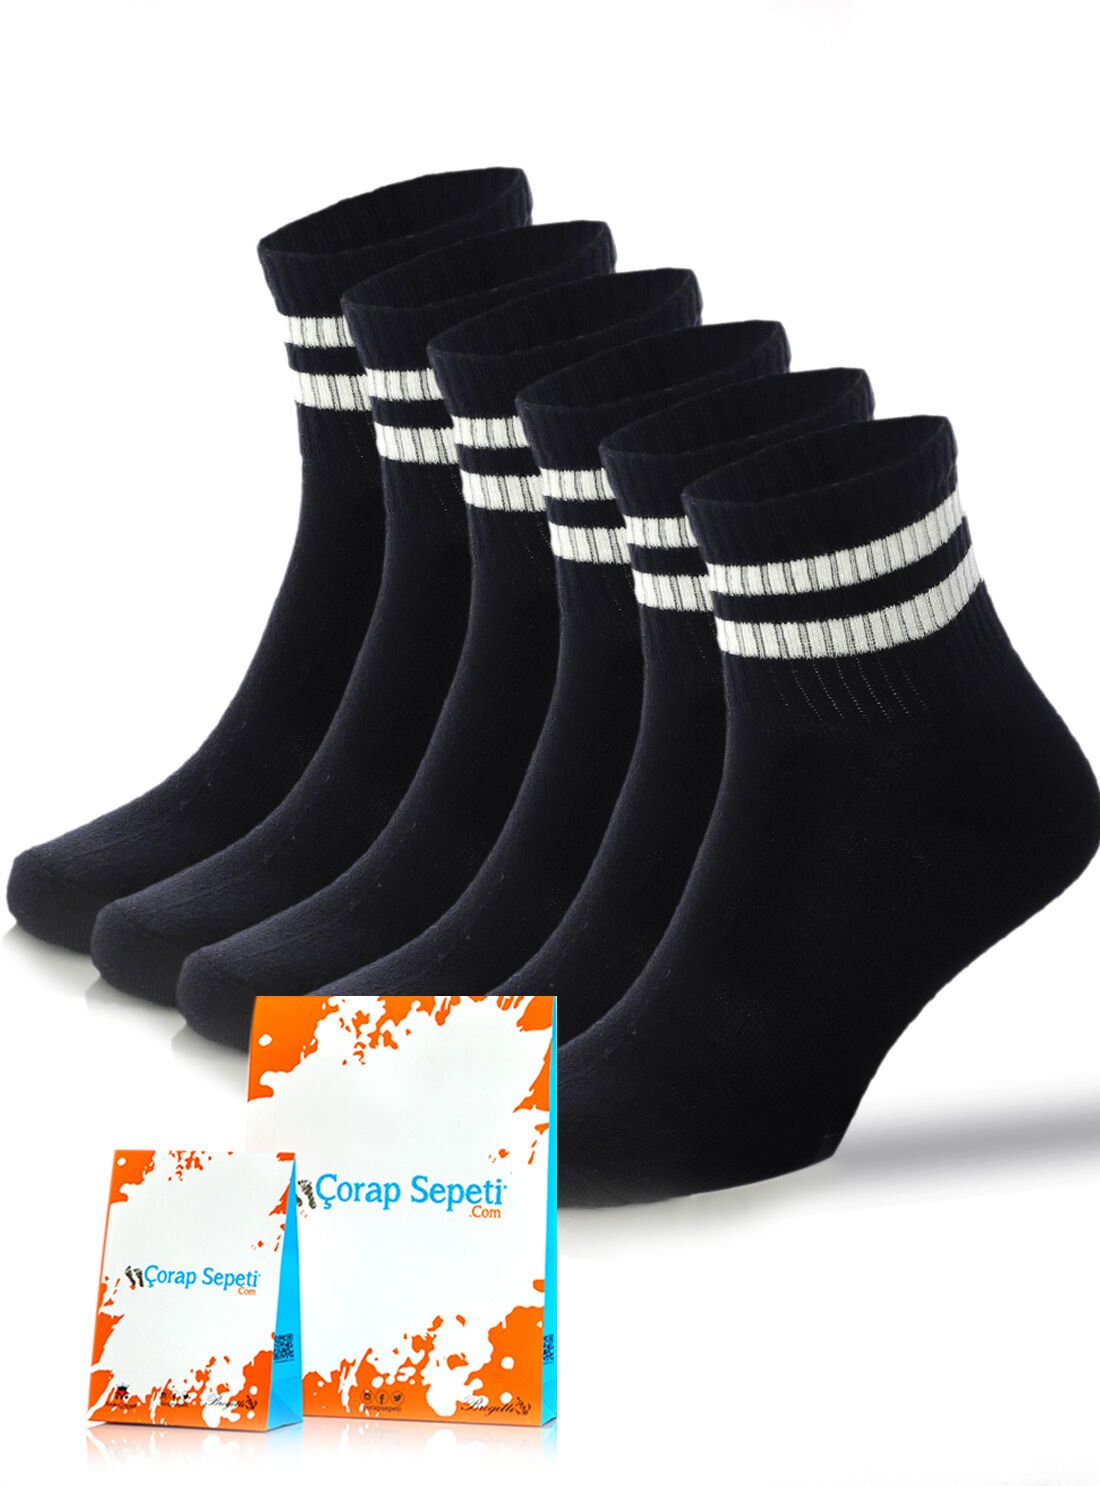 Erkek Spor Çorap 6lı Avantaj Paket Siyah Renk